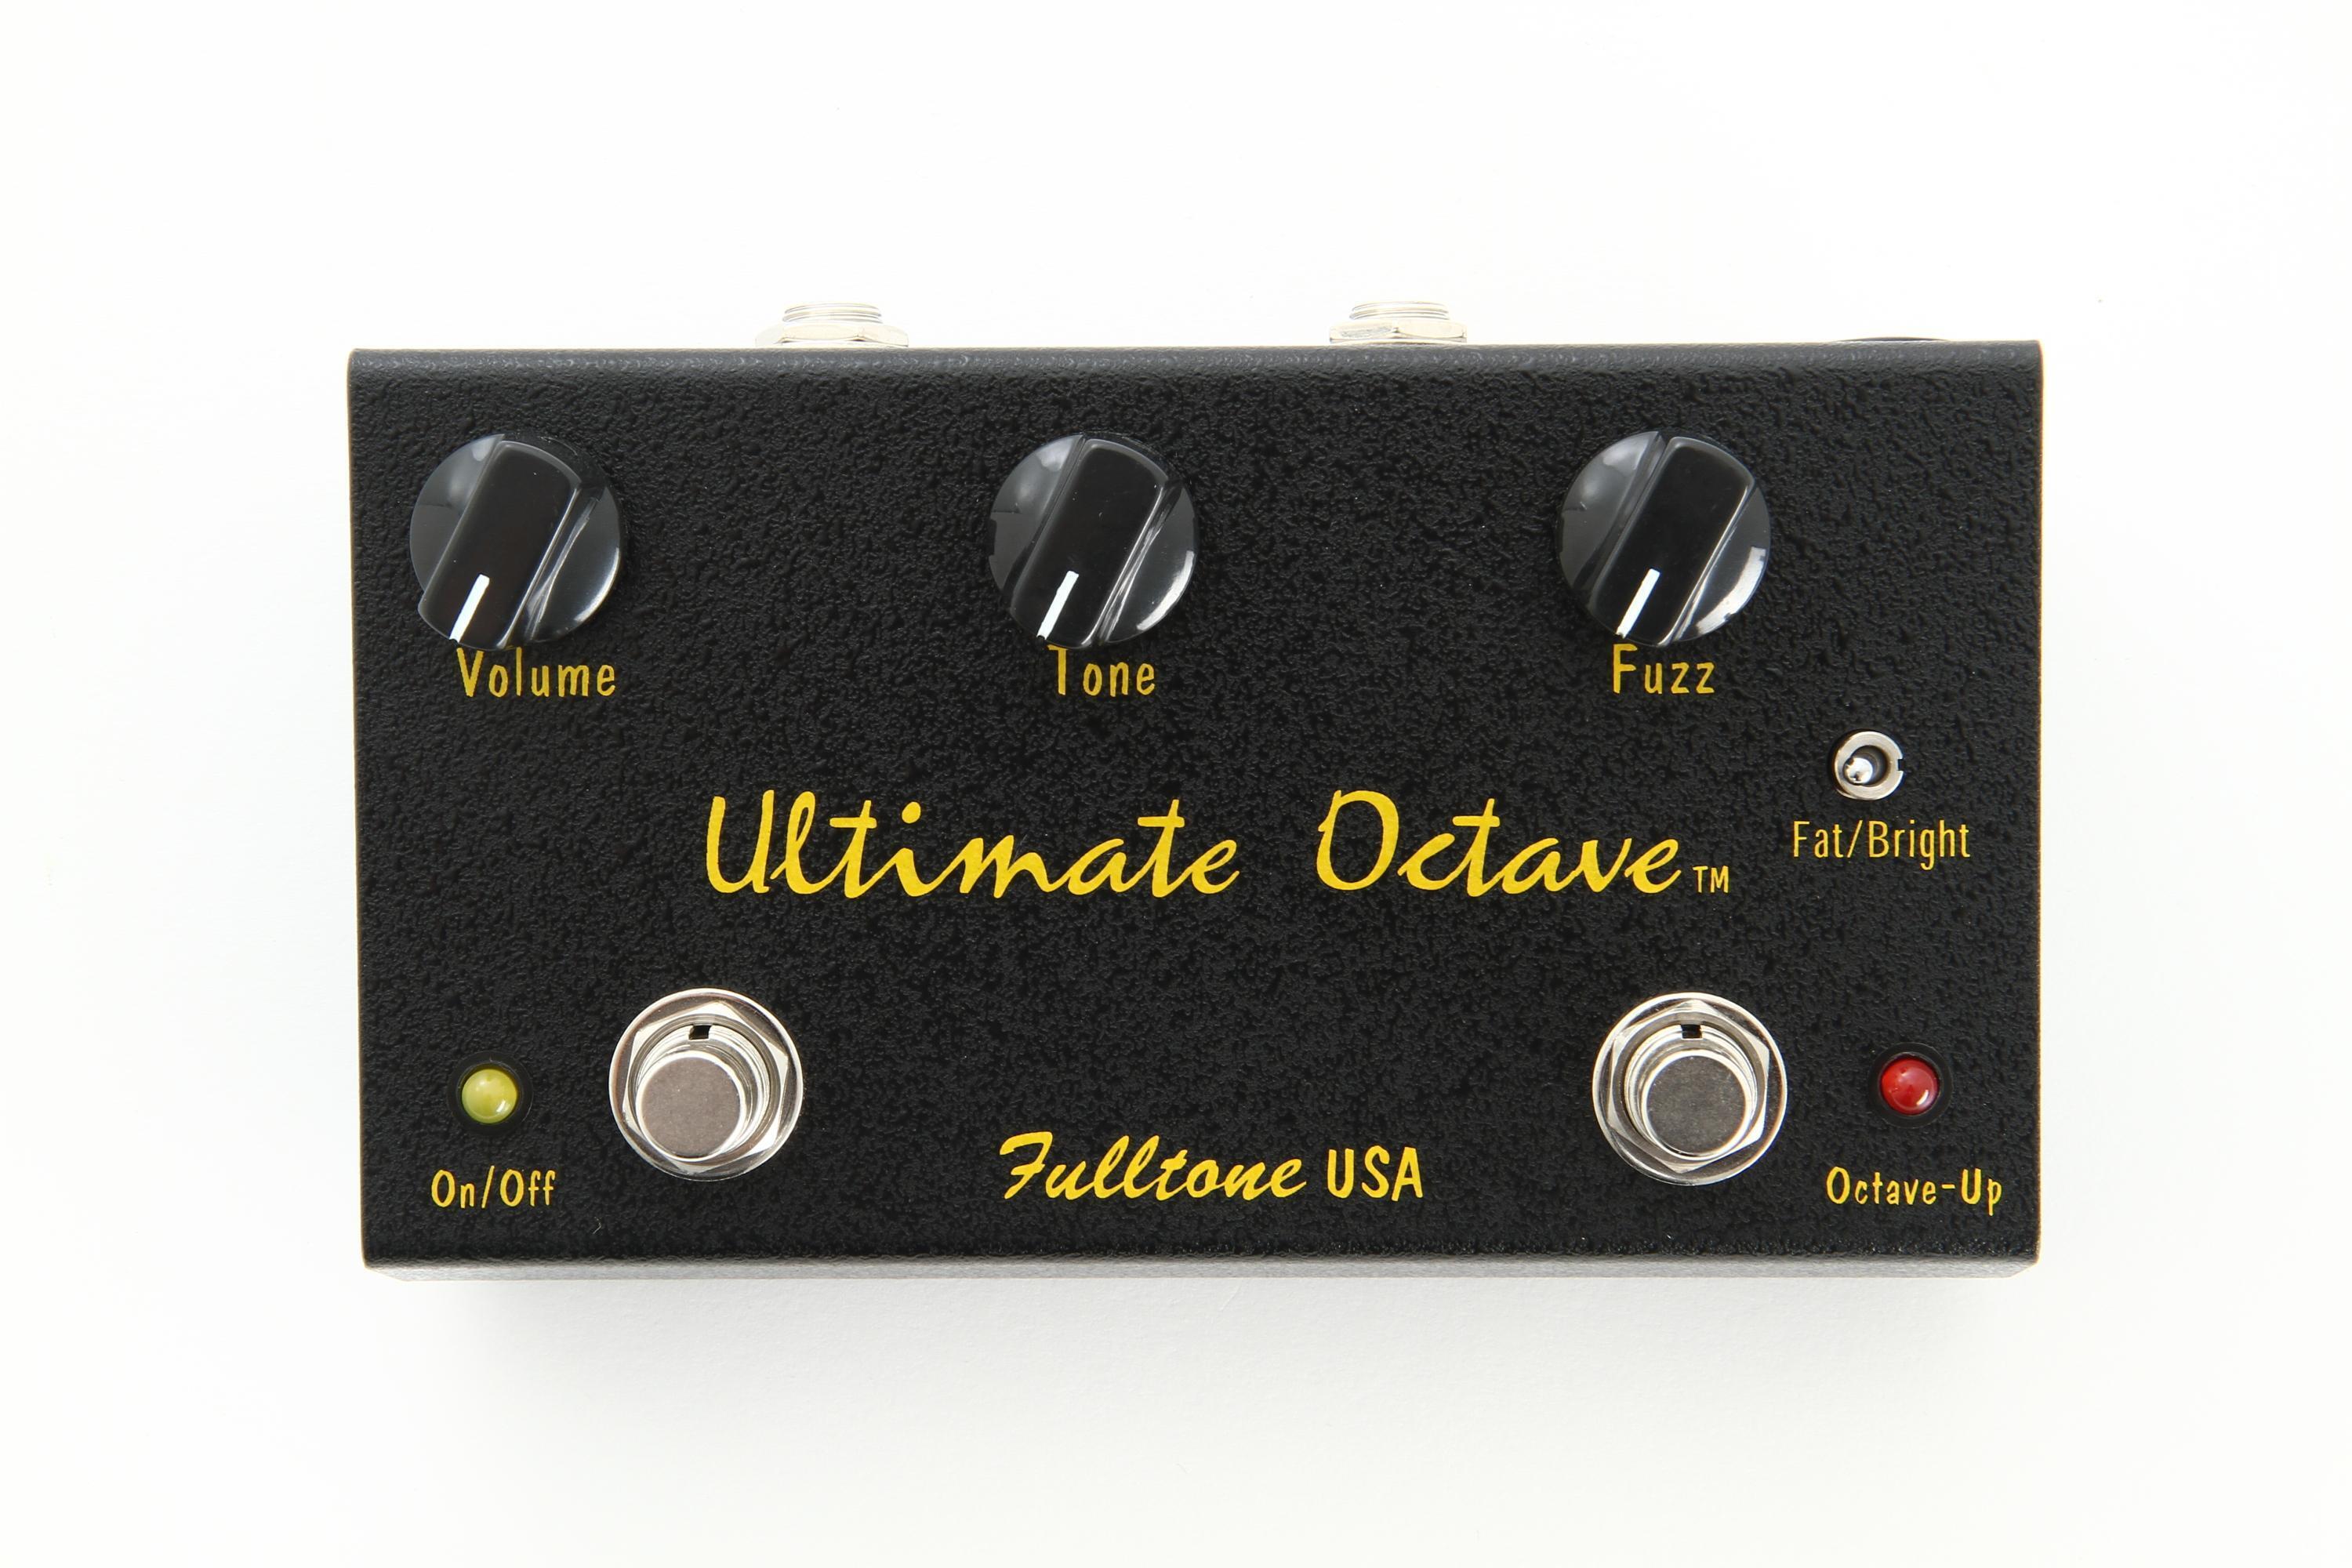 Fulltone Ultimate Octave本体のみの出品になります